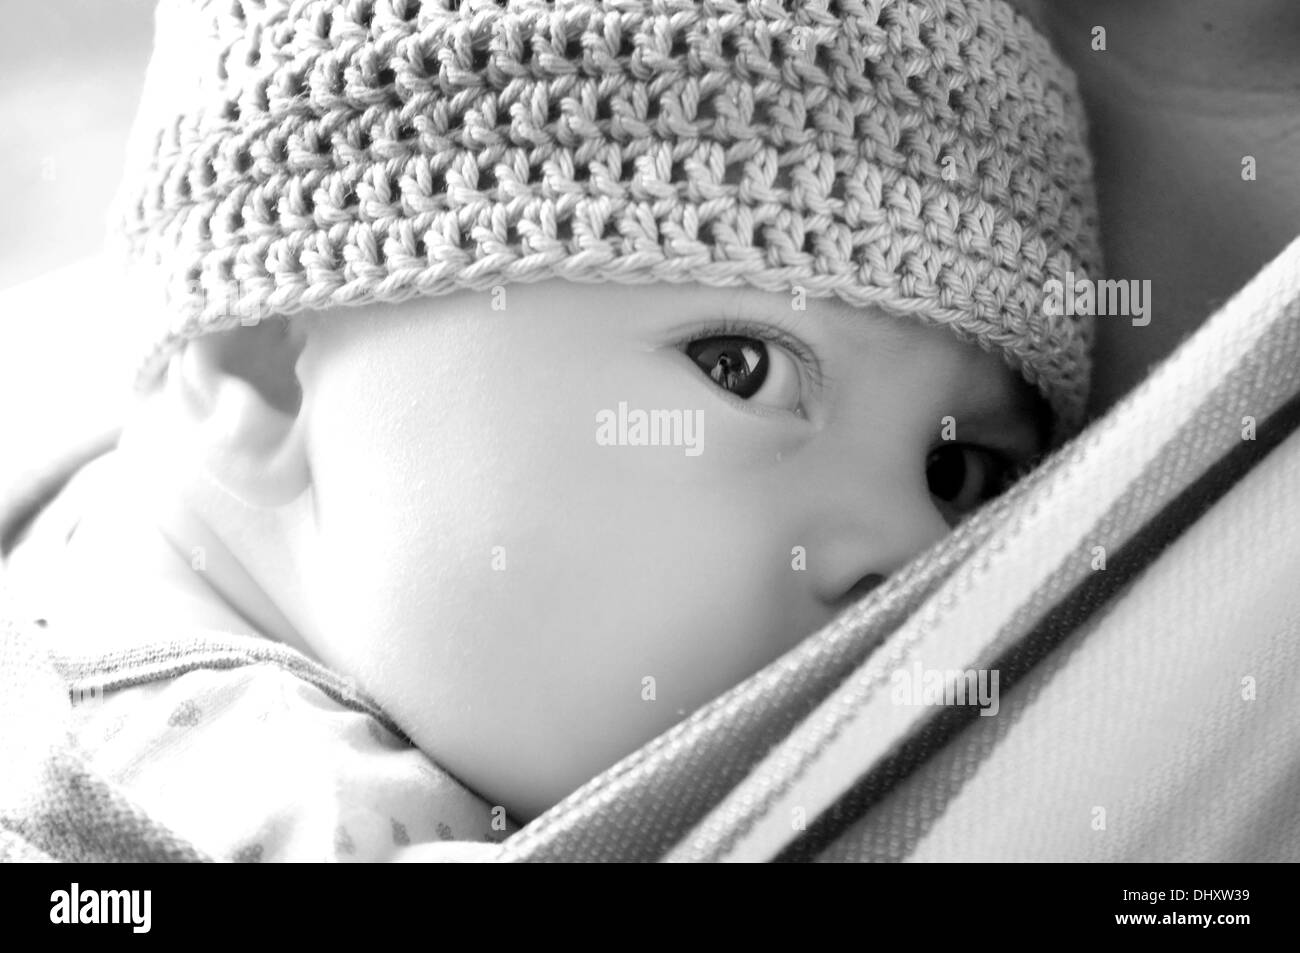 Les jeunes baby wearing hat tricoté Banque D'Images